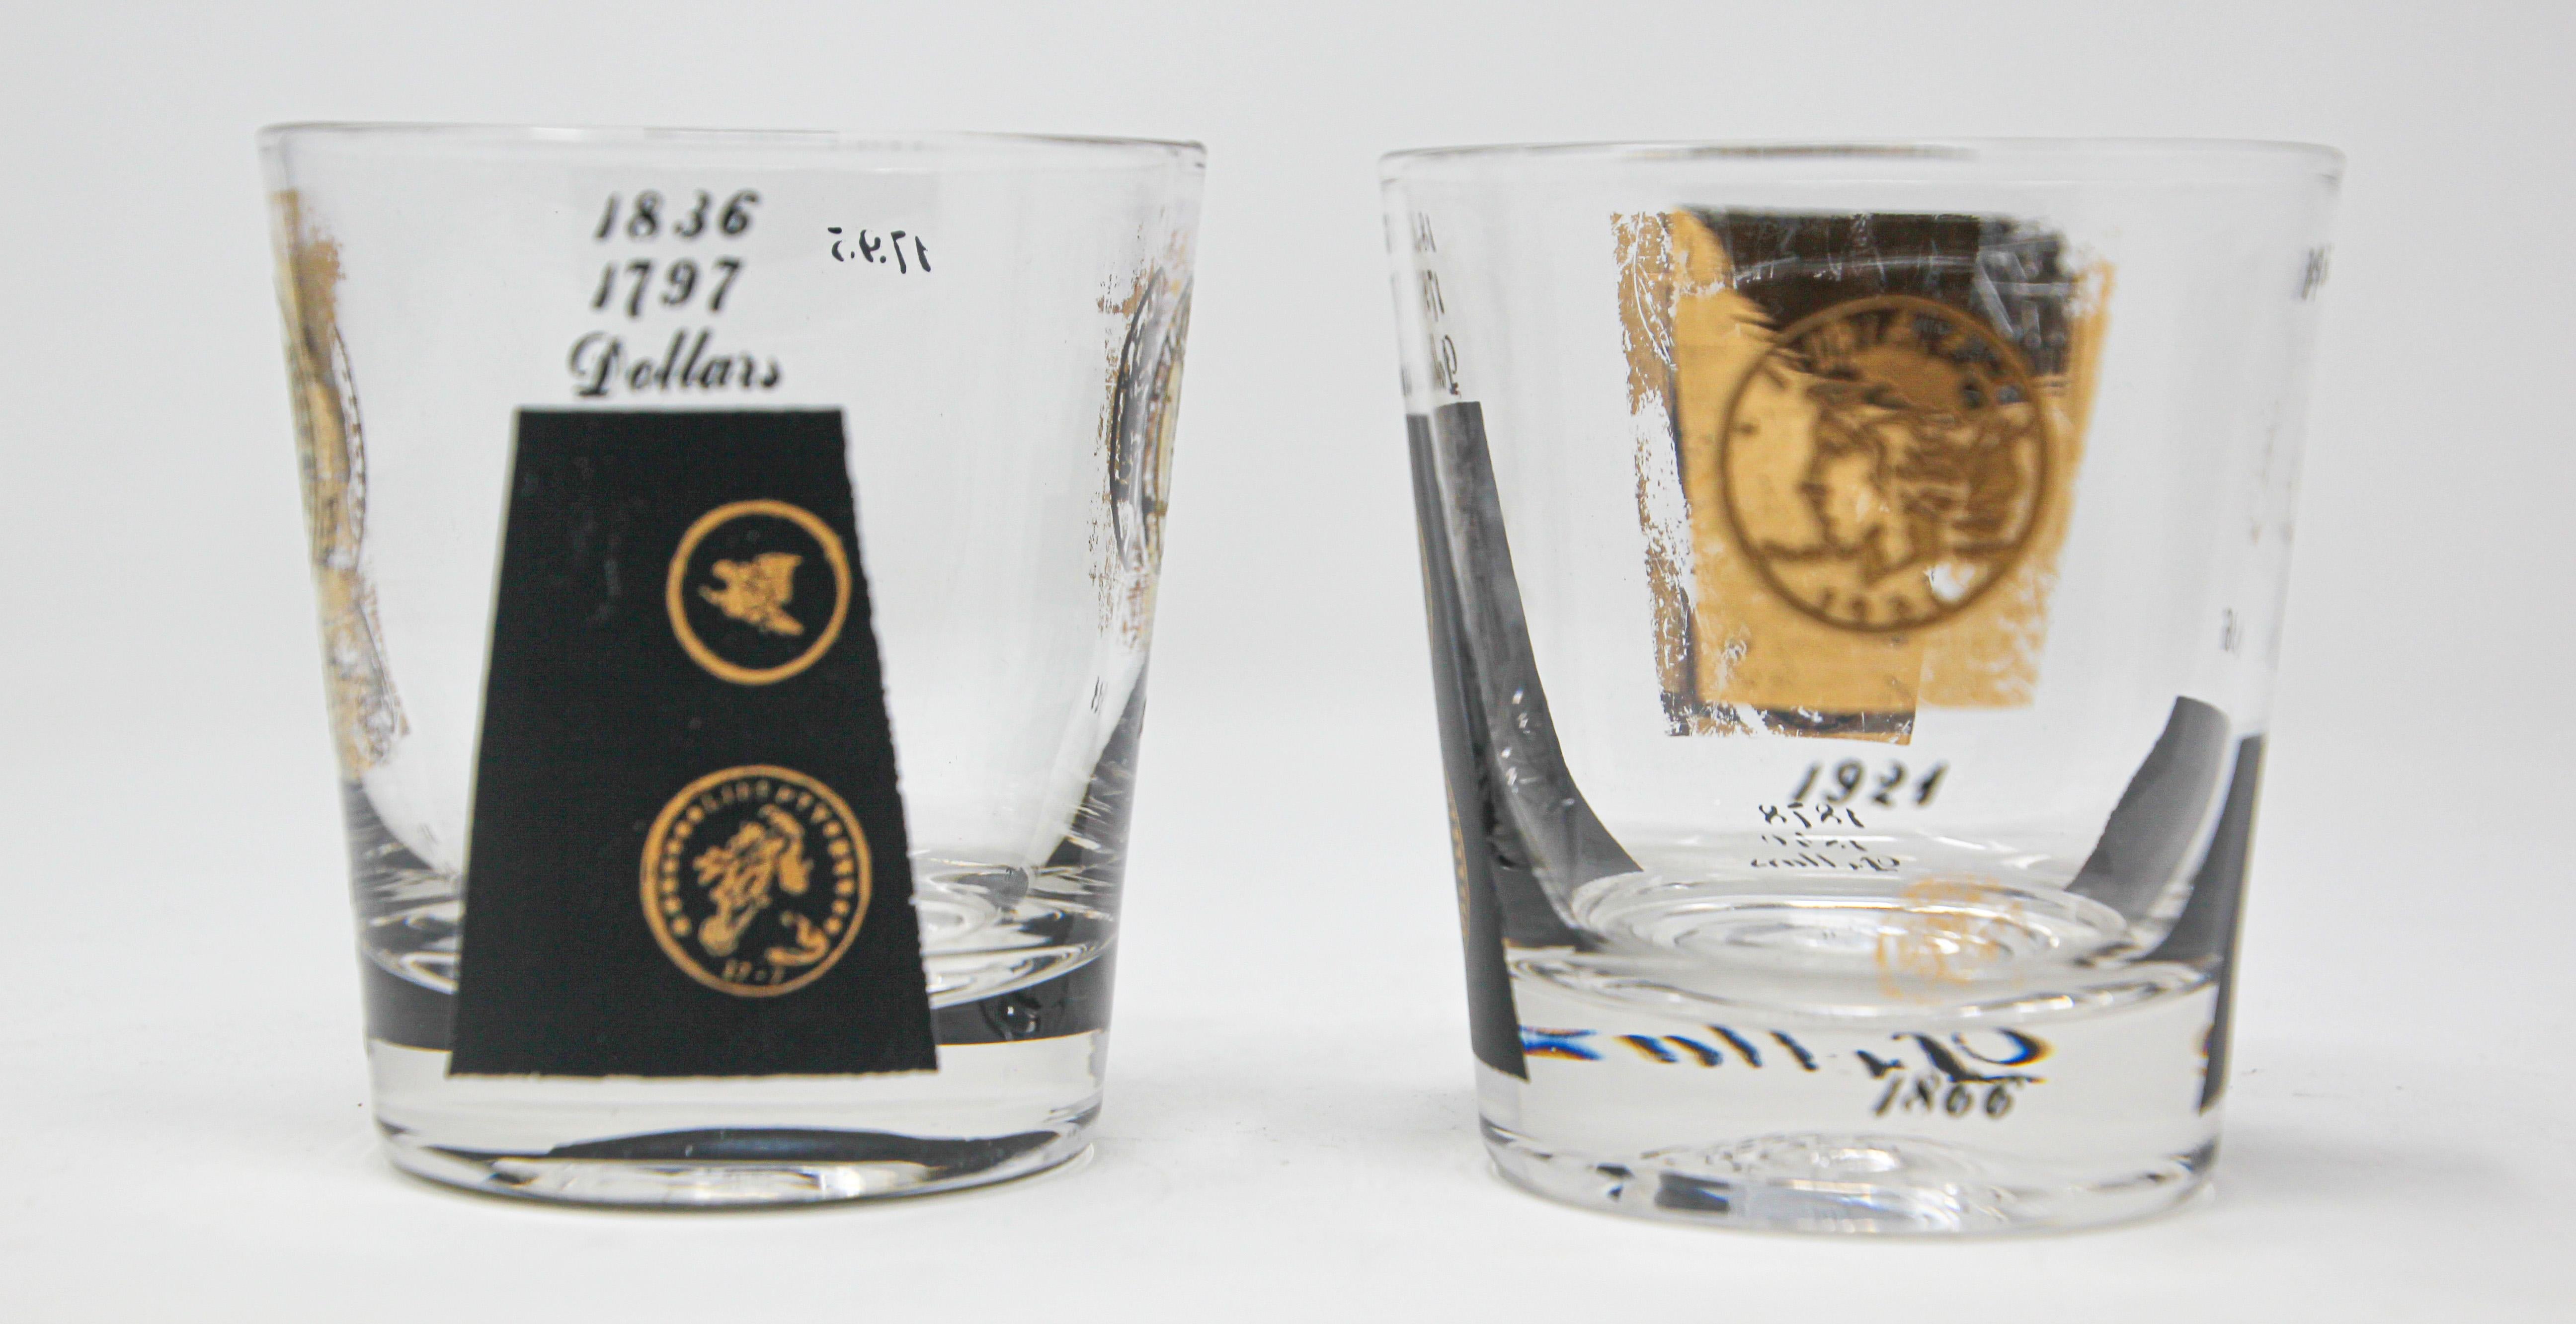 Midcentury Vintage Satz von 2 Stück Felsen Gläser 1960er Jahre Gold gedruckt Präsidentschafts-Münzen.
Cera 22-karätiges Gold signiert Glaswaren Barware.
Gold und schwarzes Münzdesign.
Die Gläser zeigen 